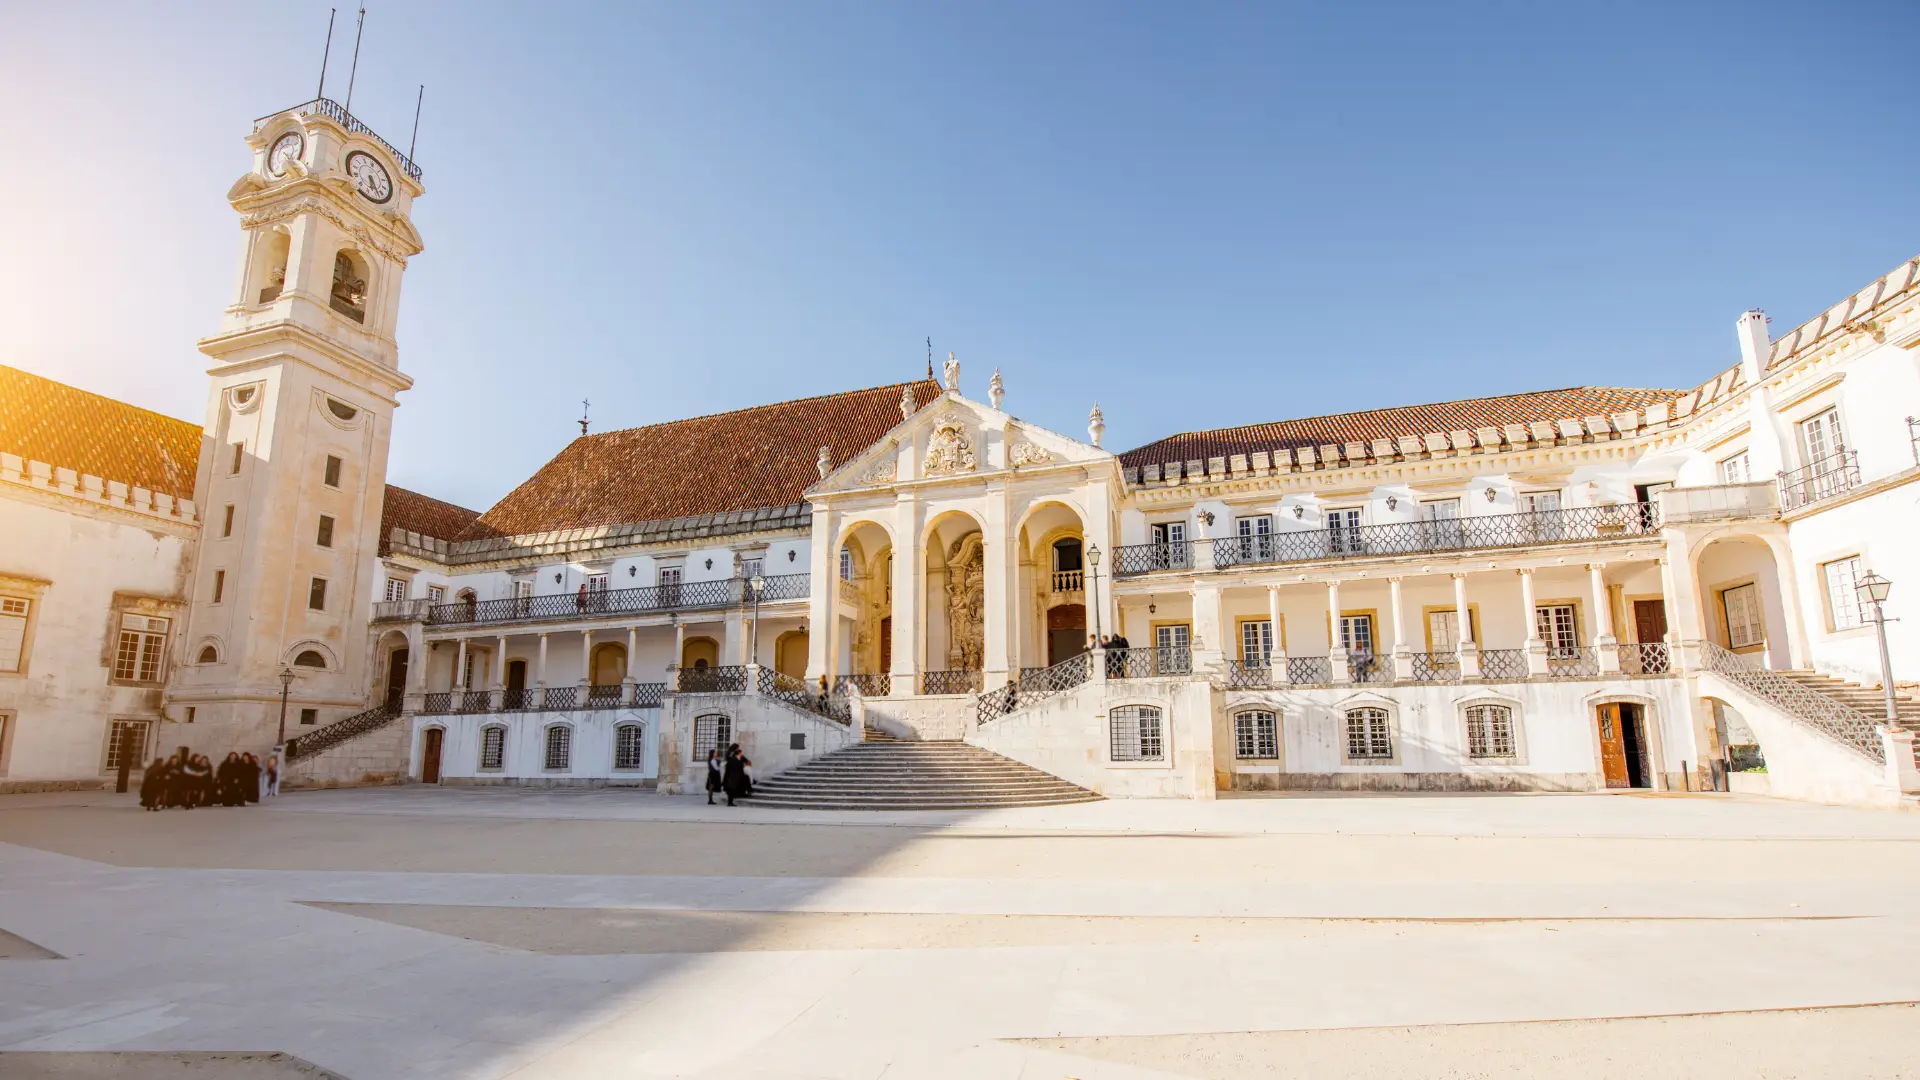 Capa negra de saudade. Ensino em Coimbra mudou com a pandemia - SIC Notícias